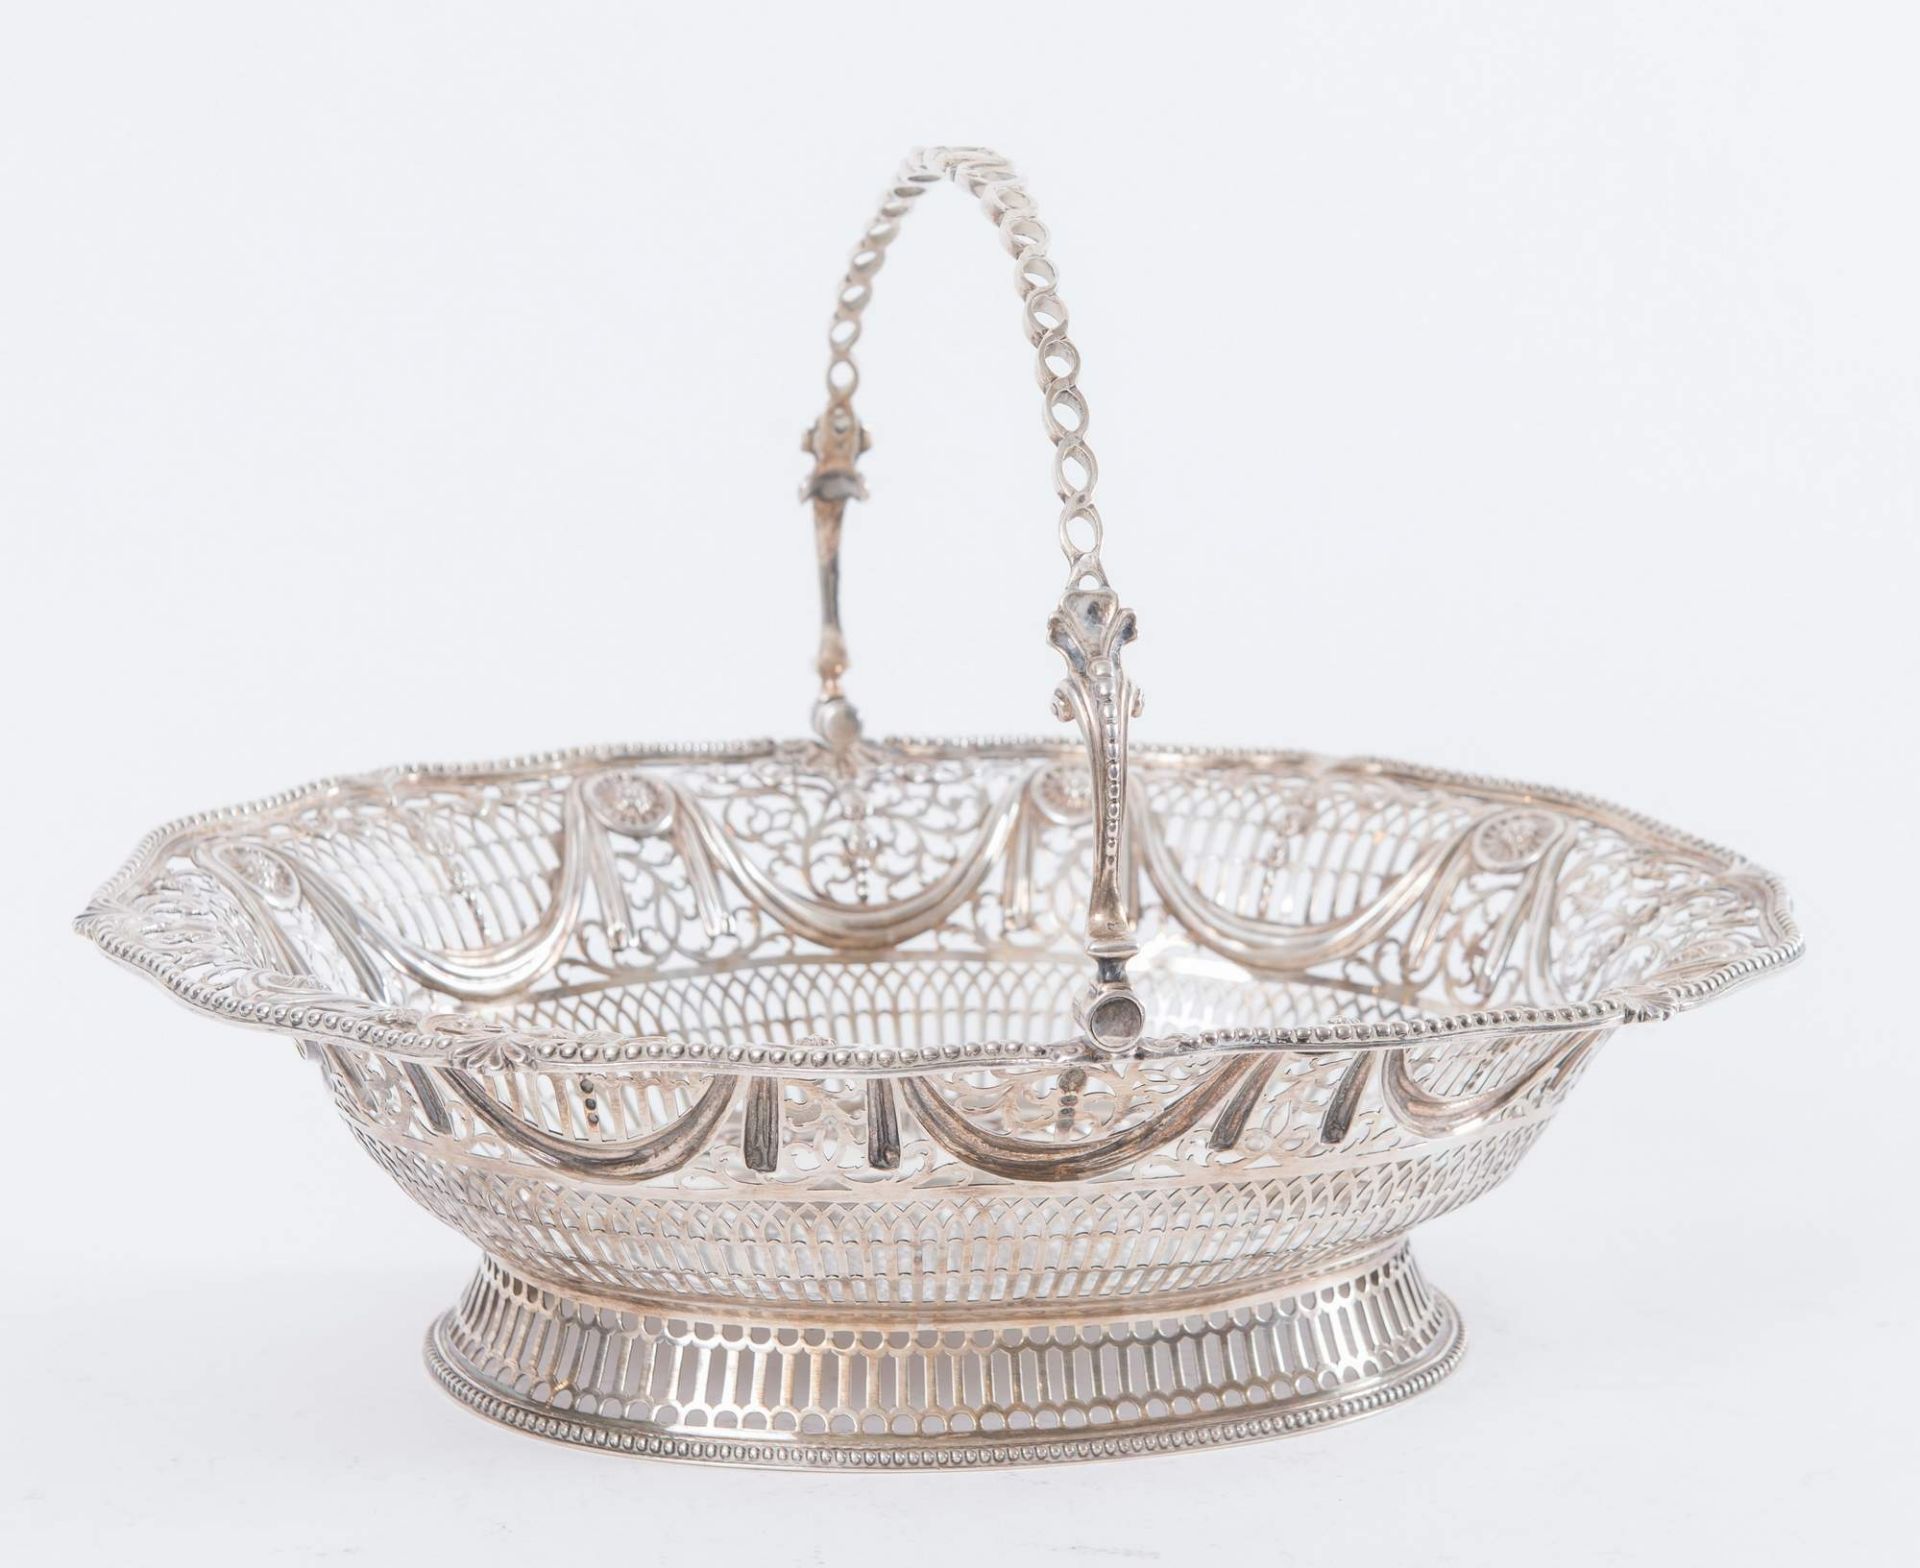 Argentiere inglese W.F/W.I, Londra, 1774?. Centrotavola/cesta in argento. Sul bordo superiore ornato